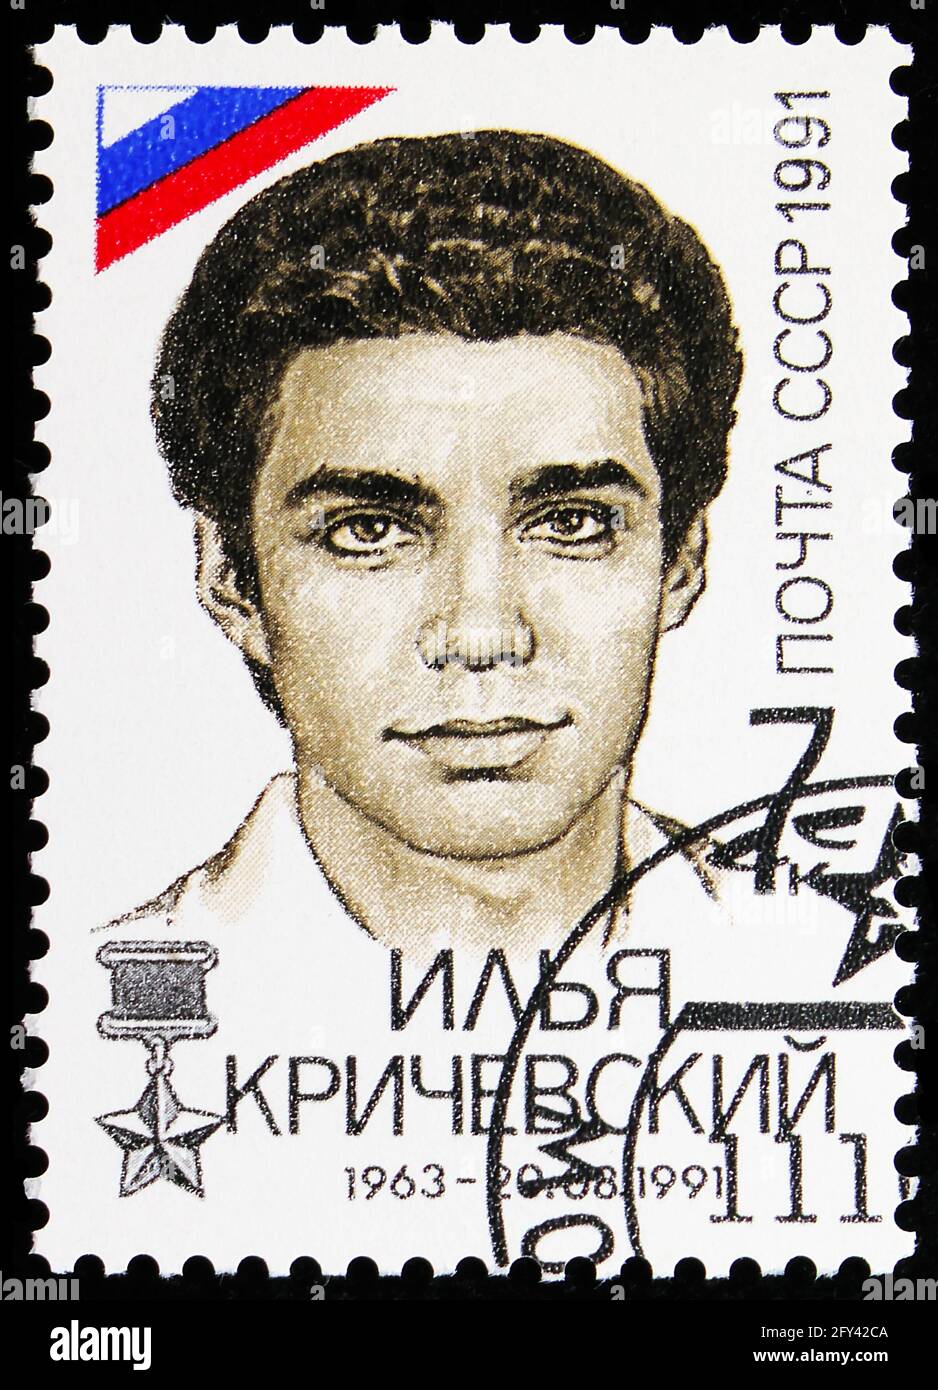 MOSCÚ, RUSIA - 31 DE AGOSTO de 2019: Sello postal impreso en la Unión Soviética (Rusia) muestra Ilya Krychevsky, derrota de la serie de intento de golpe, alrededor de 1991 Foto de stock